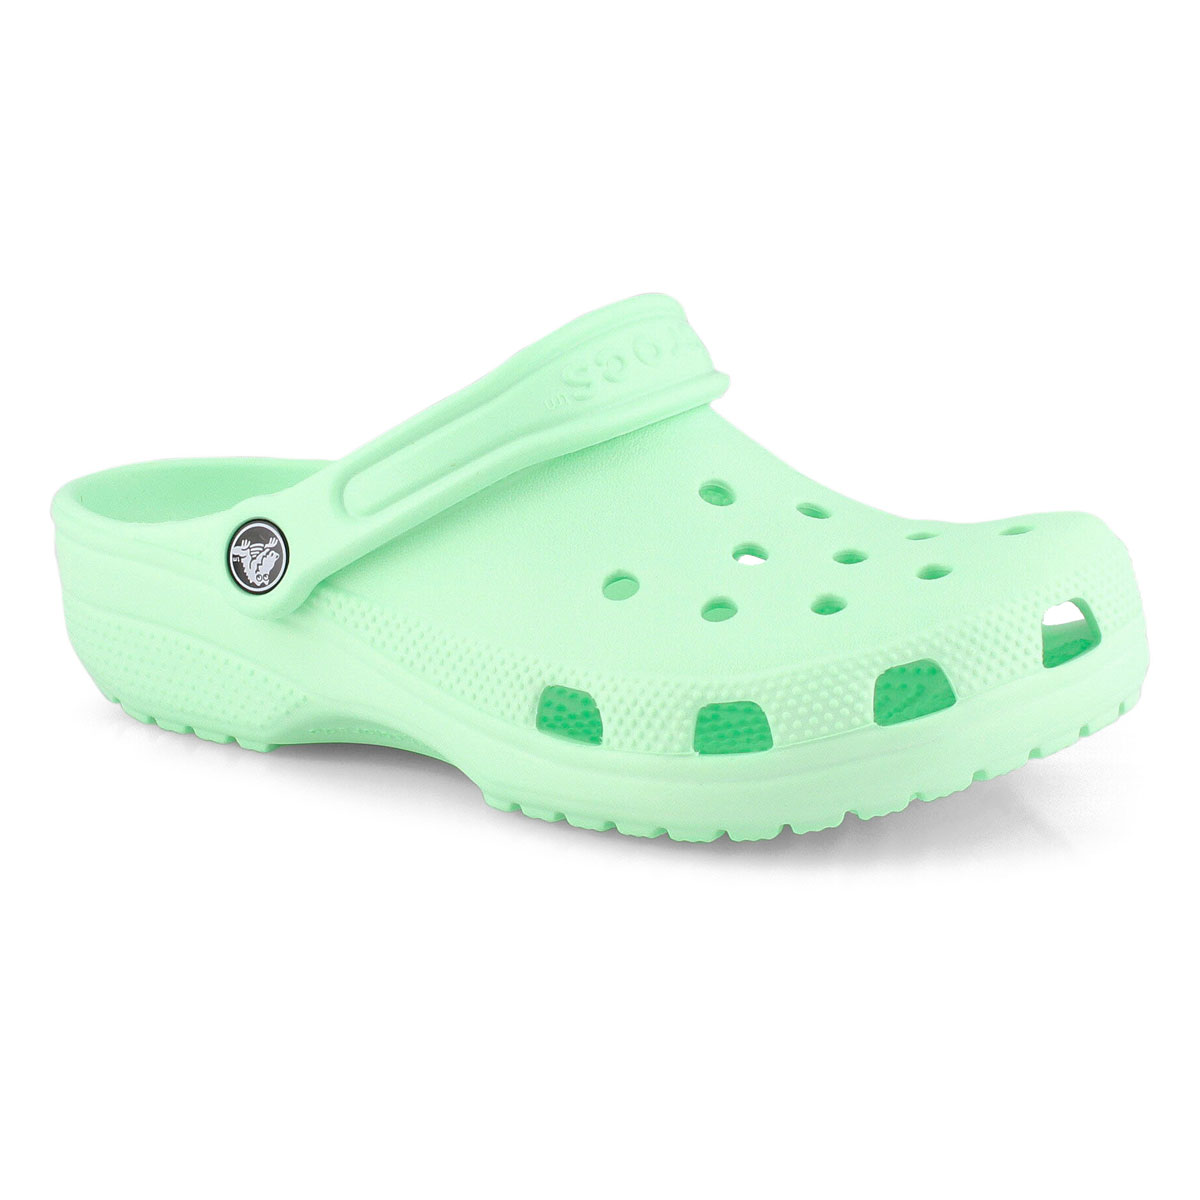 softmoc crocs